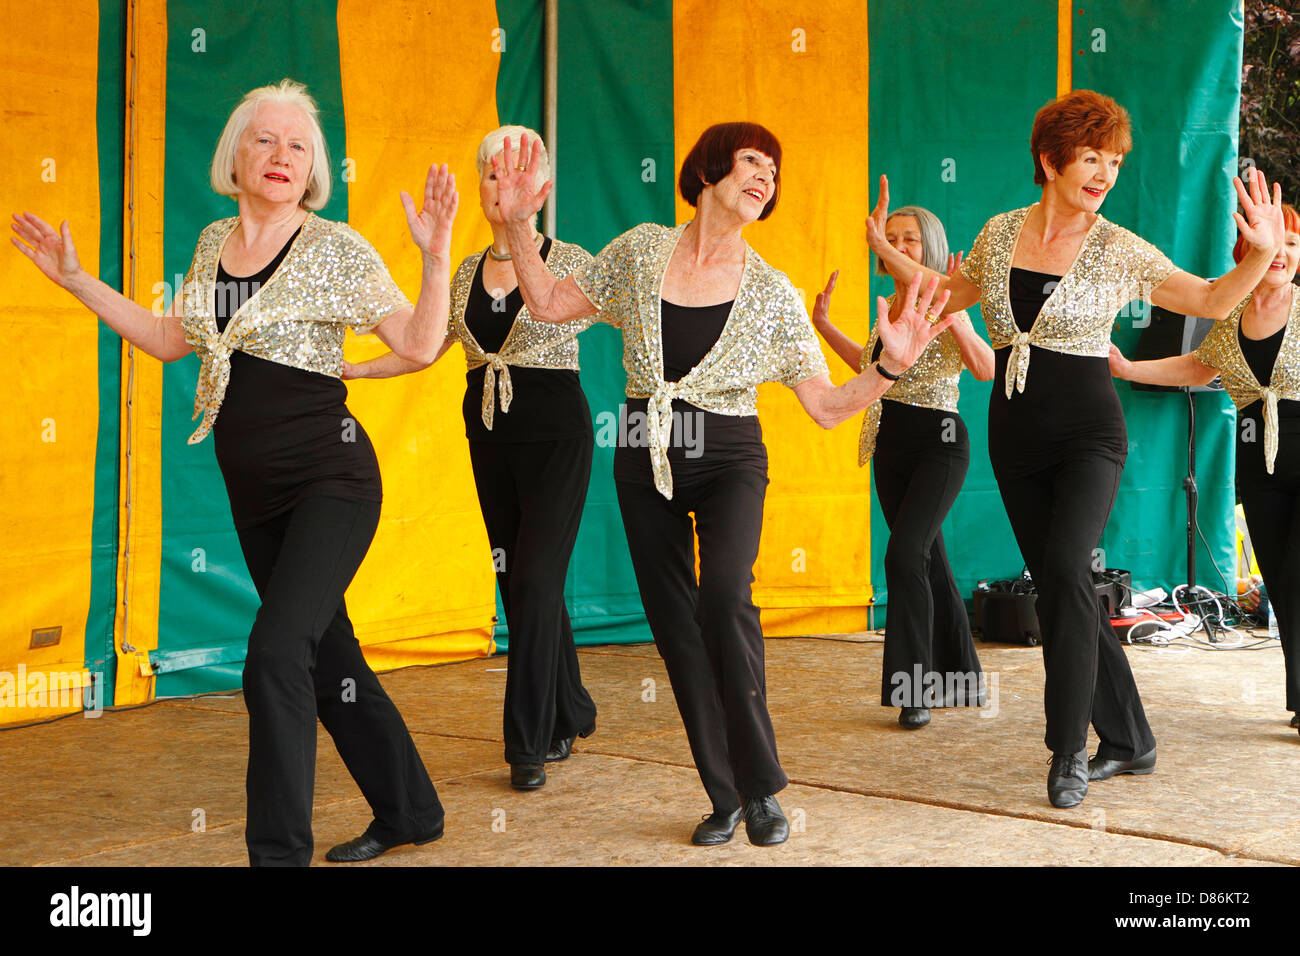 Las bailarinas maduro en un festival local, Dulwich, Londres, Reino Unido. Foto de stock